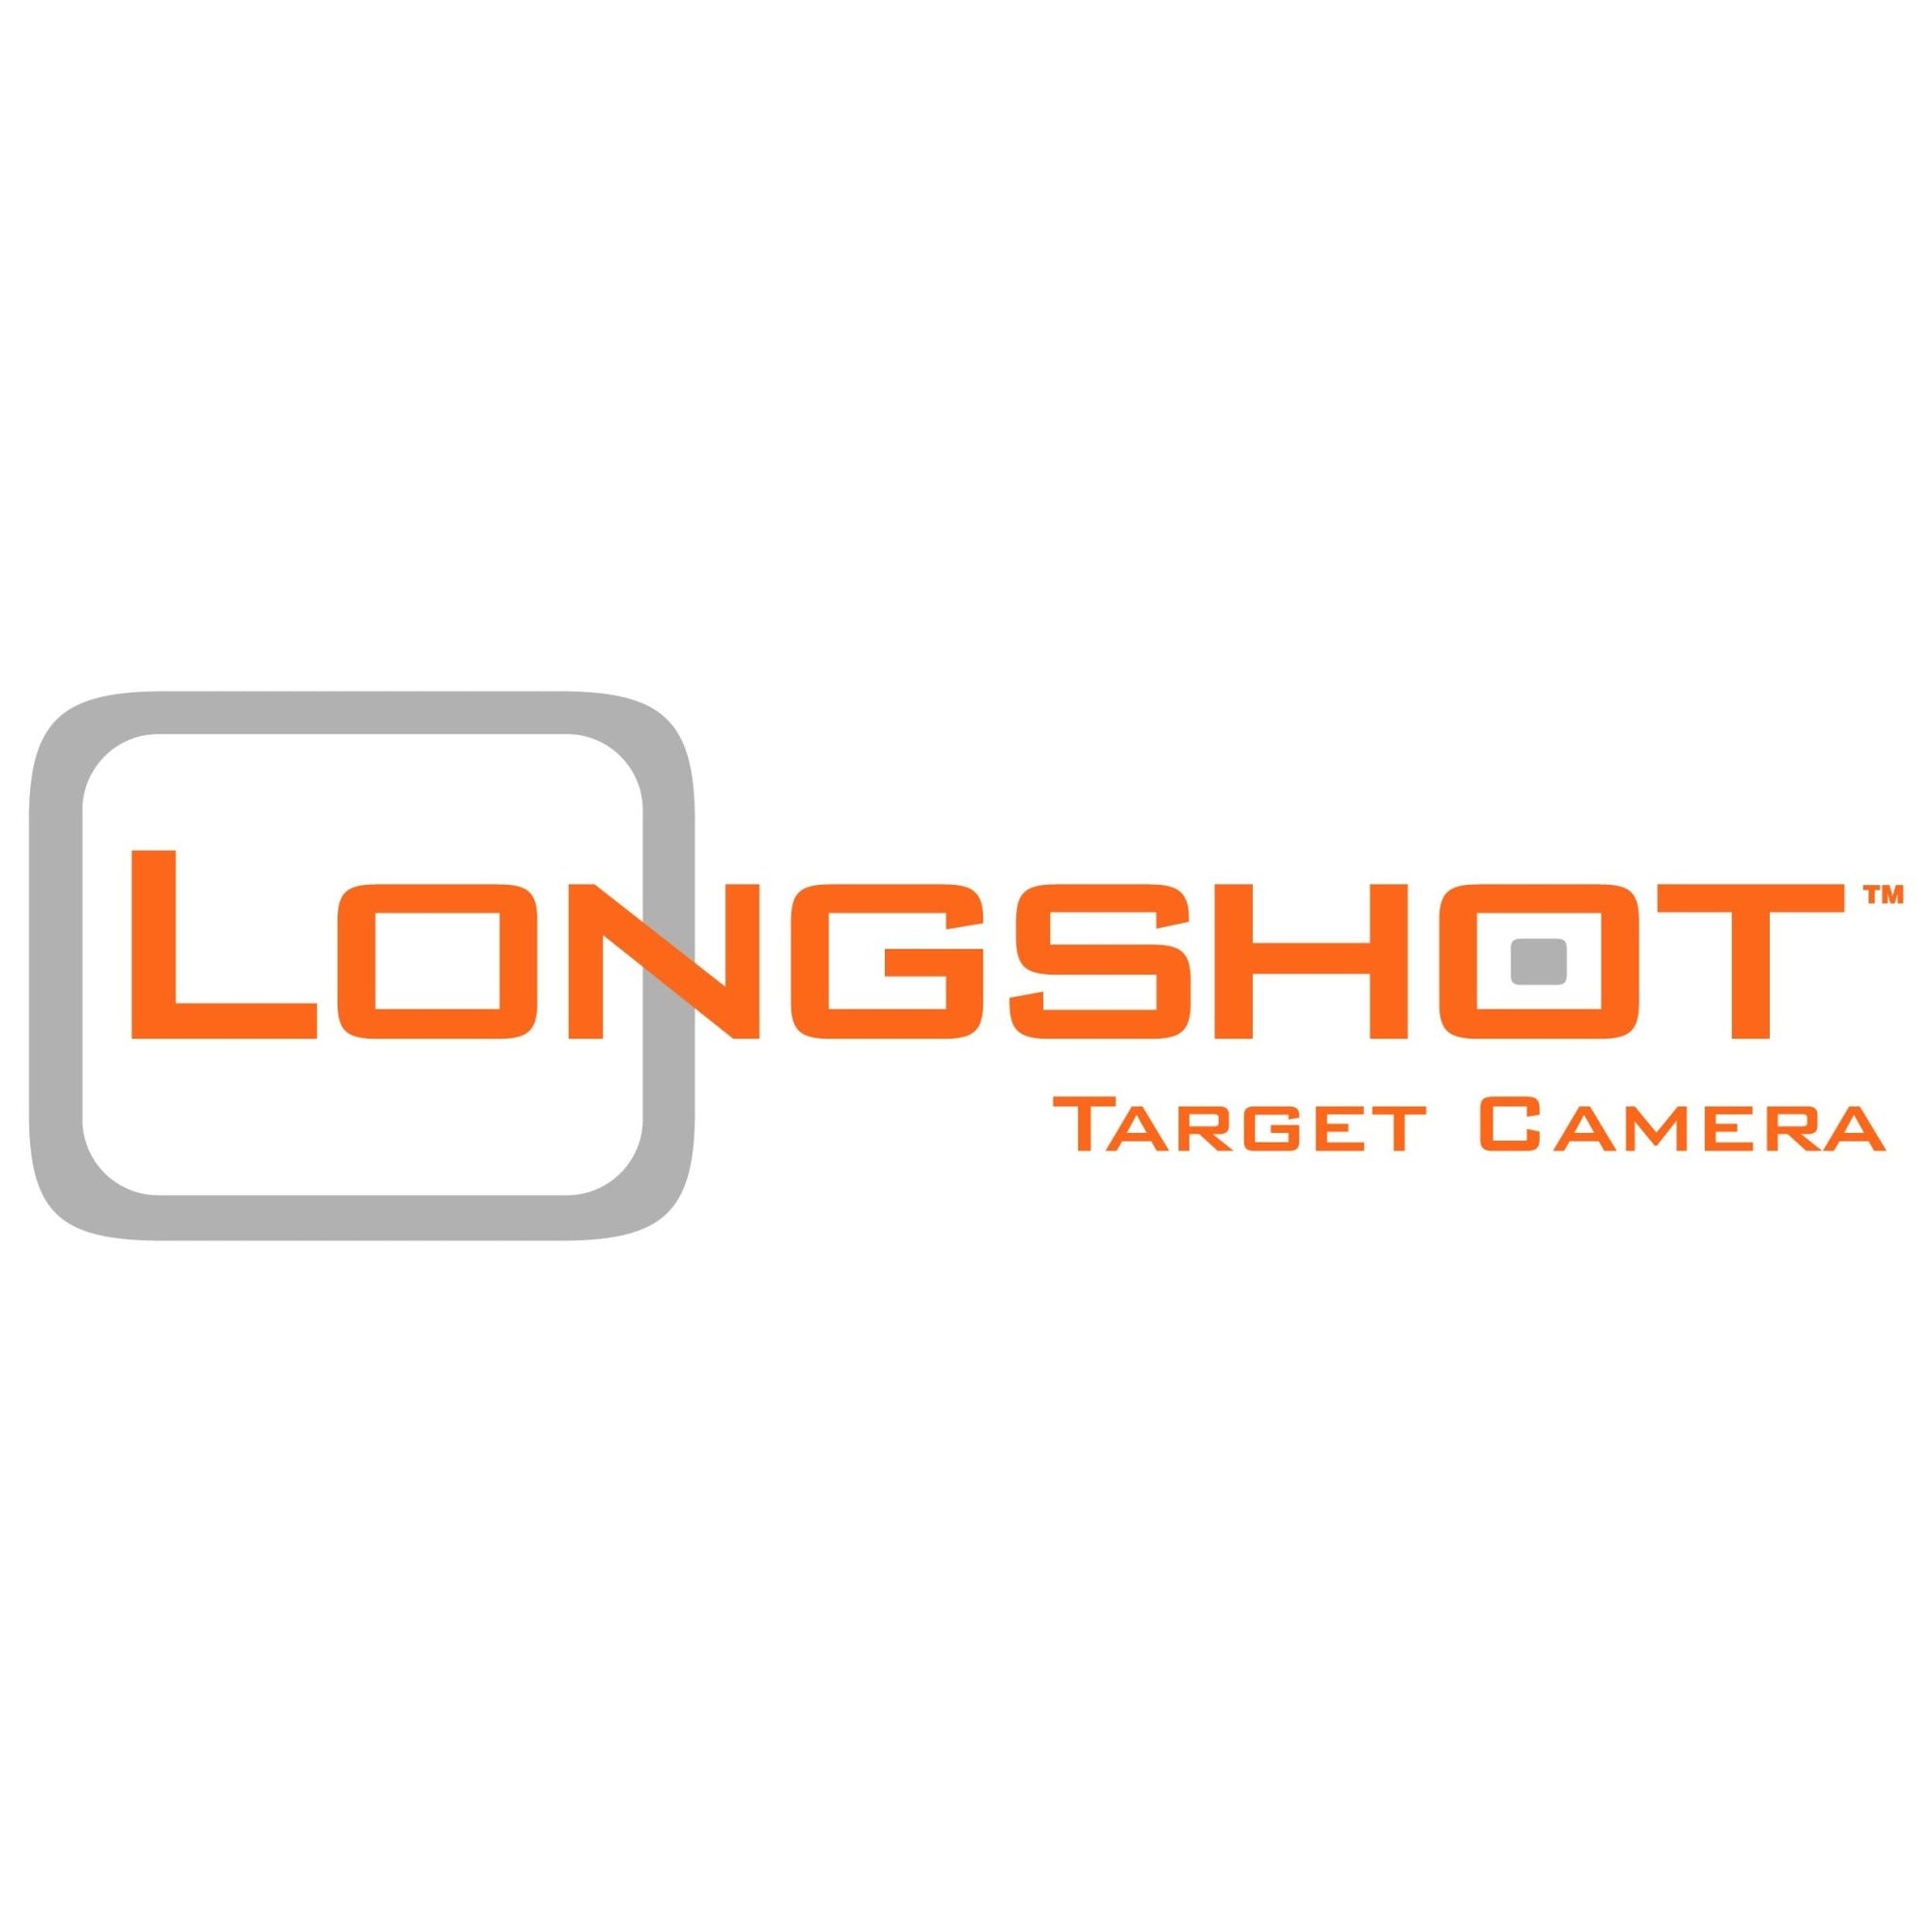 LONGSHOT in SHOT Business | Longshot Target Cameras